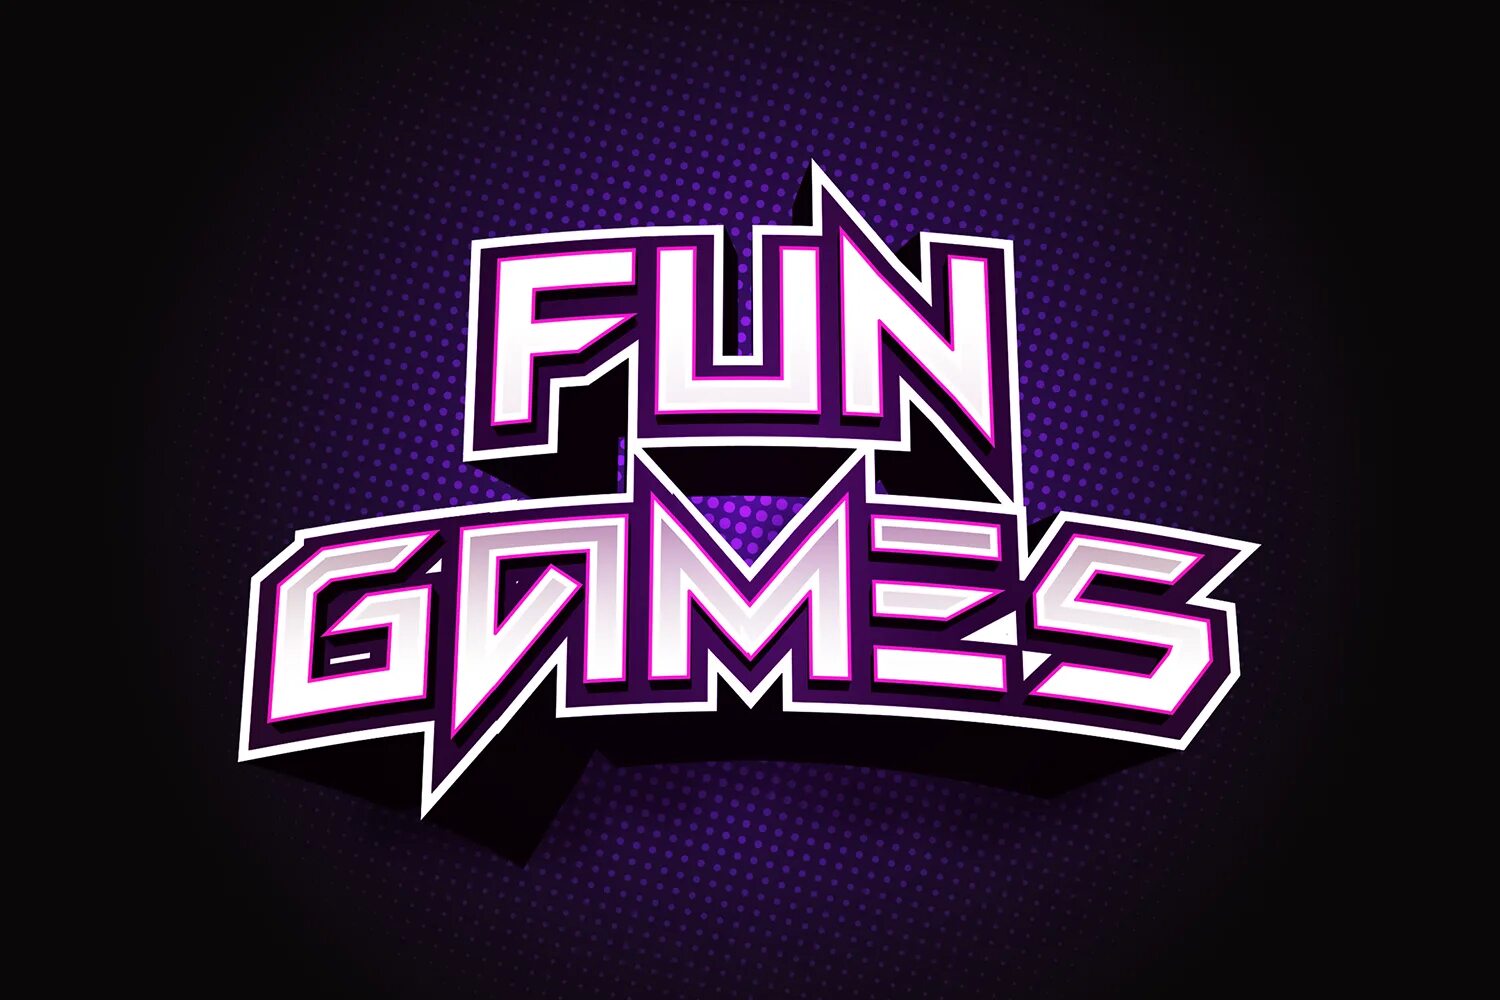 The game is fun. Fun and games. Fun игра. Fun game компания. Fun games font.